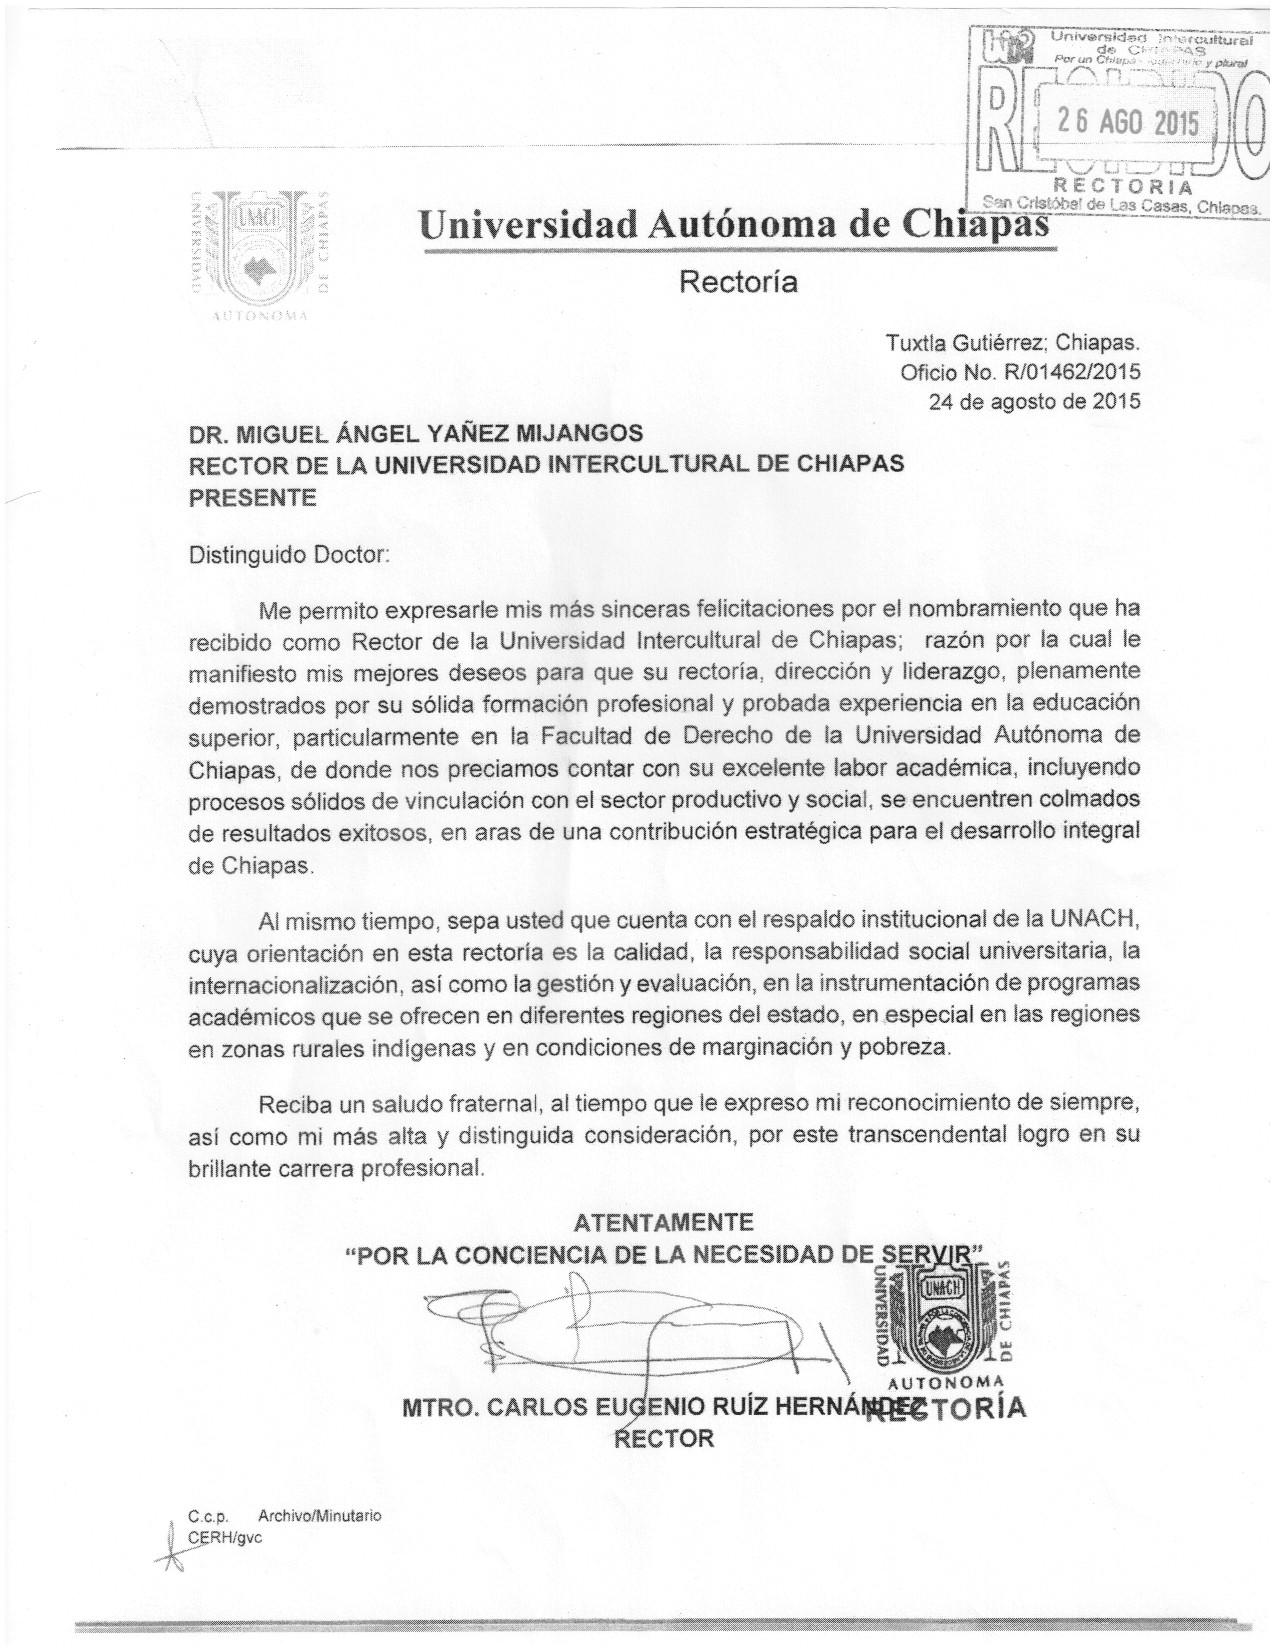 Felicitaciones UNACH Dr Miguel Ángel Yáñez Mijangos